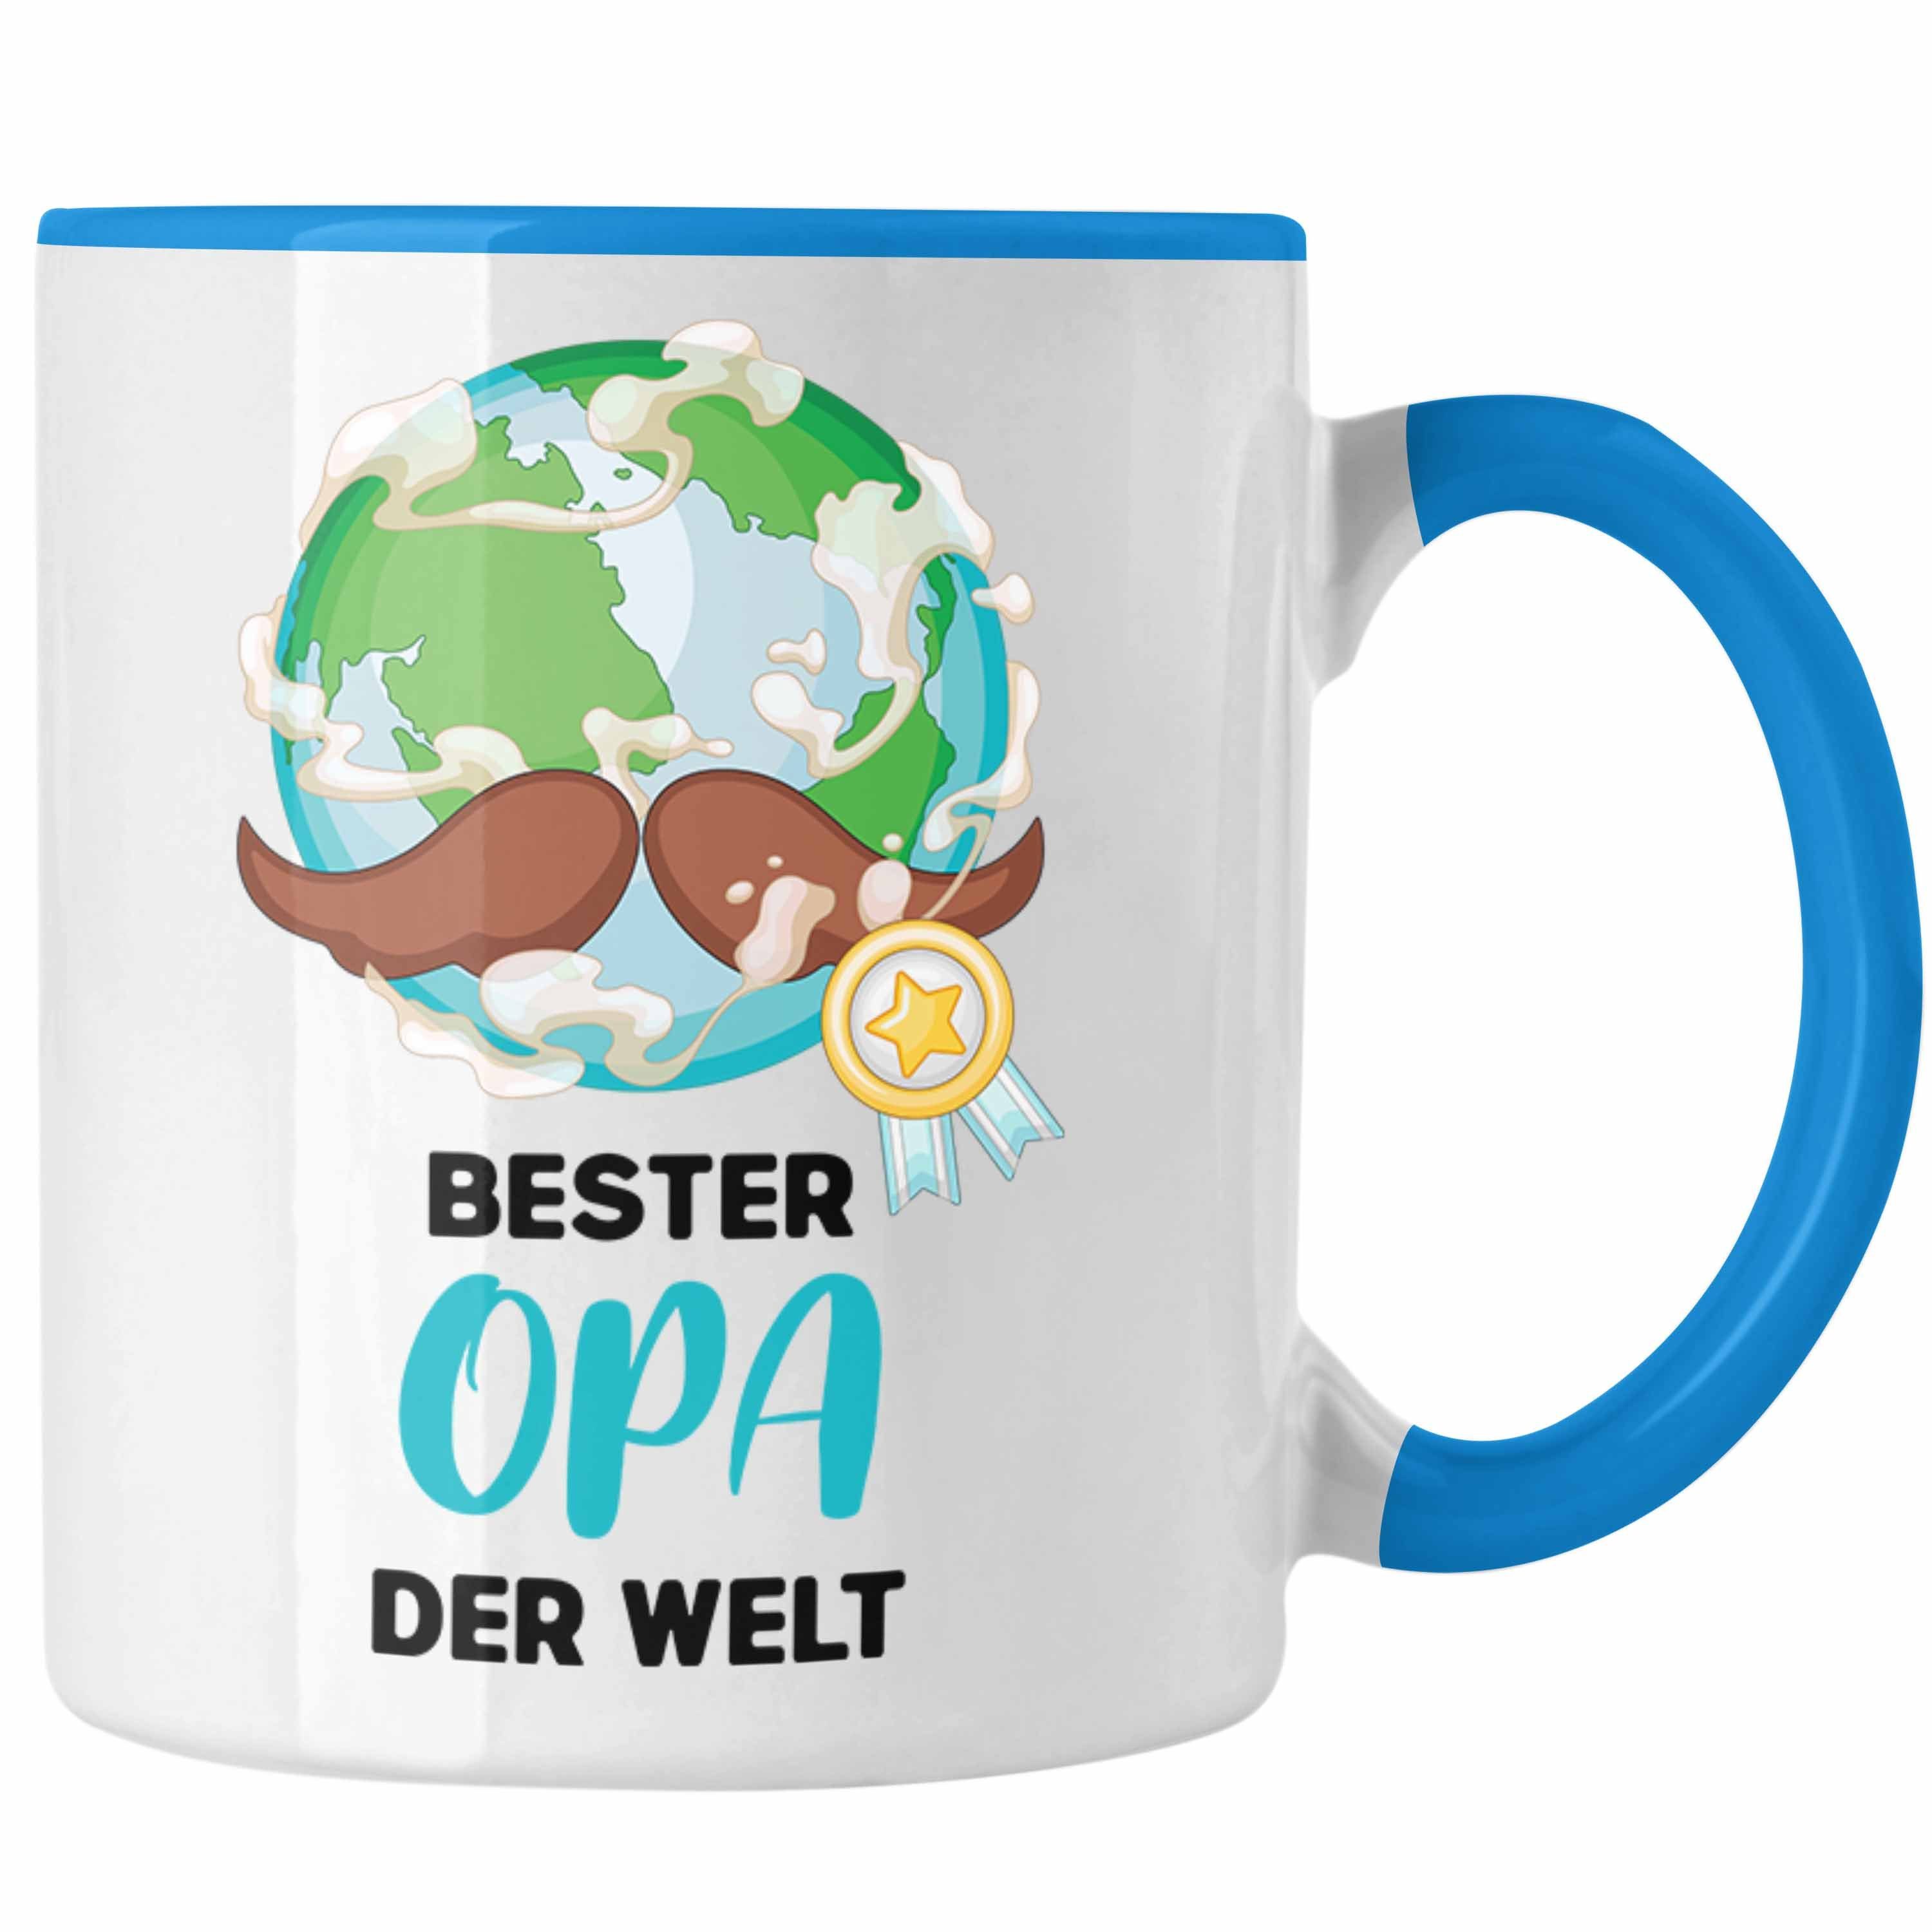 Trendation Tasse Trendation - Bester Opa Der Welt Geschenk Tasse Kaffeetasse Spruch Lustig von Enkel zum Geburtstag Weihnachten Blau